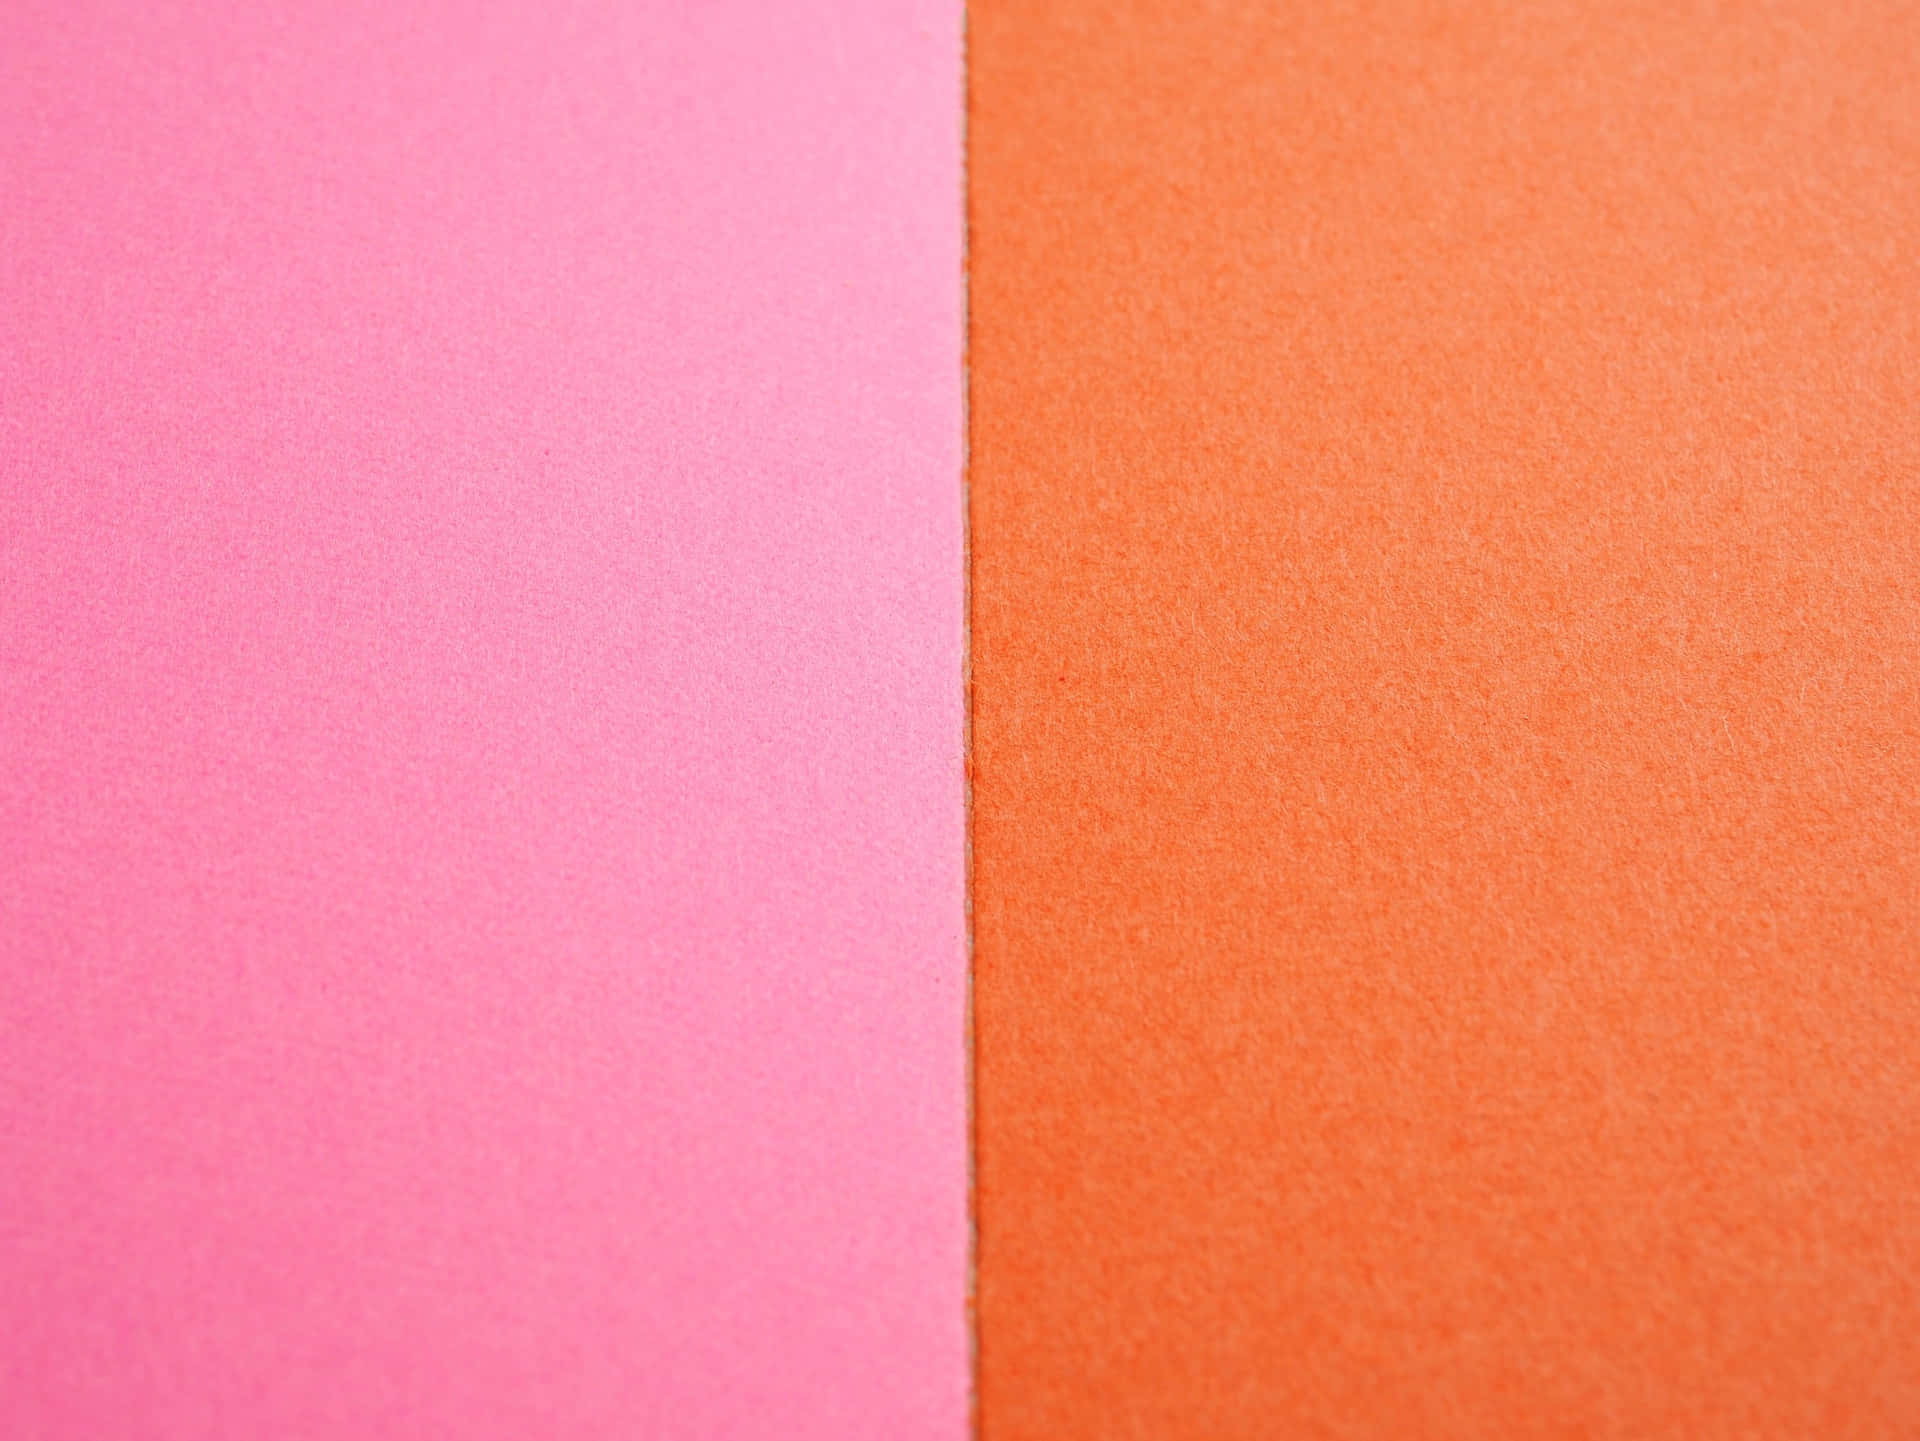 Pinkand Orange Divide Wallpaper